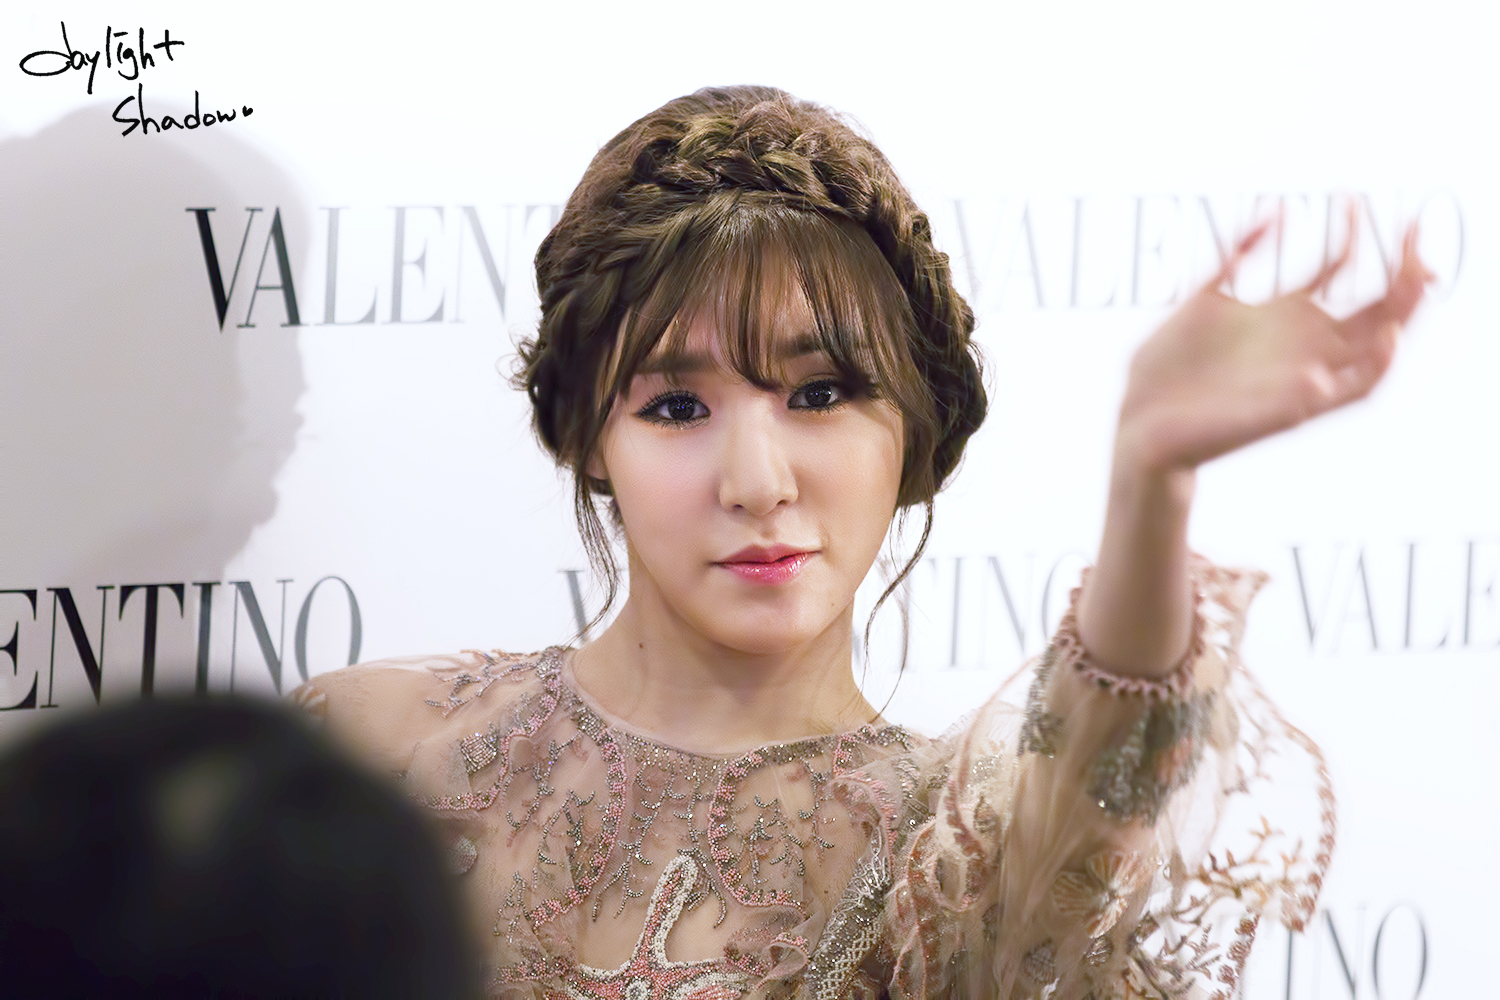 [PIC][04-02-2015]Tiffany khởi hành đi Hồng Kông để tham dự sự kện "Valentino Flagship Grand Opening" vào trưa nay - Page 6 25191B50551FCBCF1ED56E